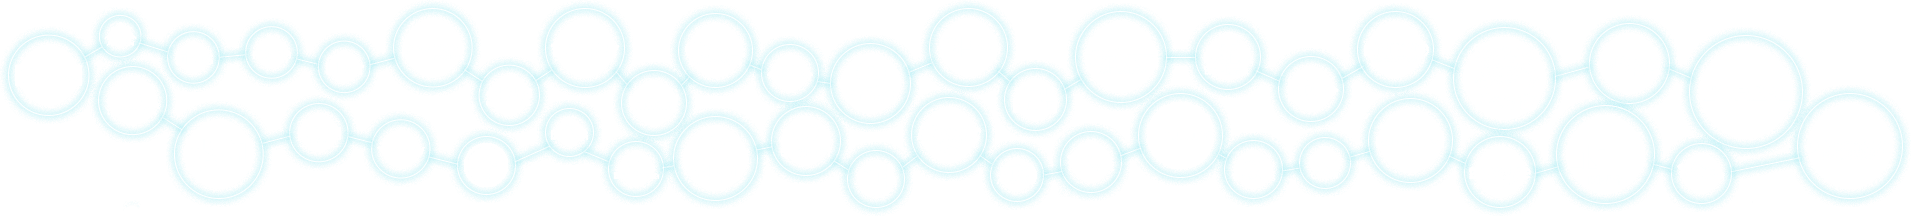 Logos de empresas conectadas por uma linha